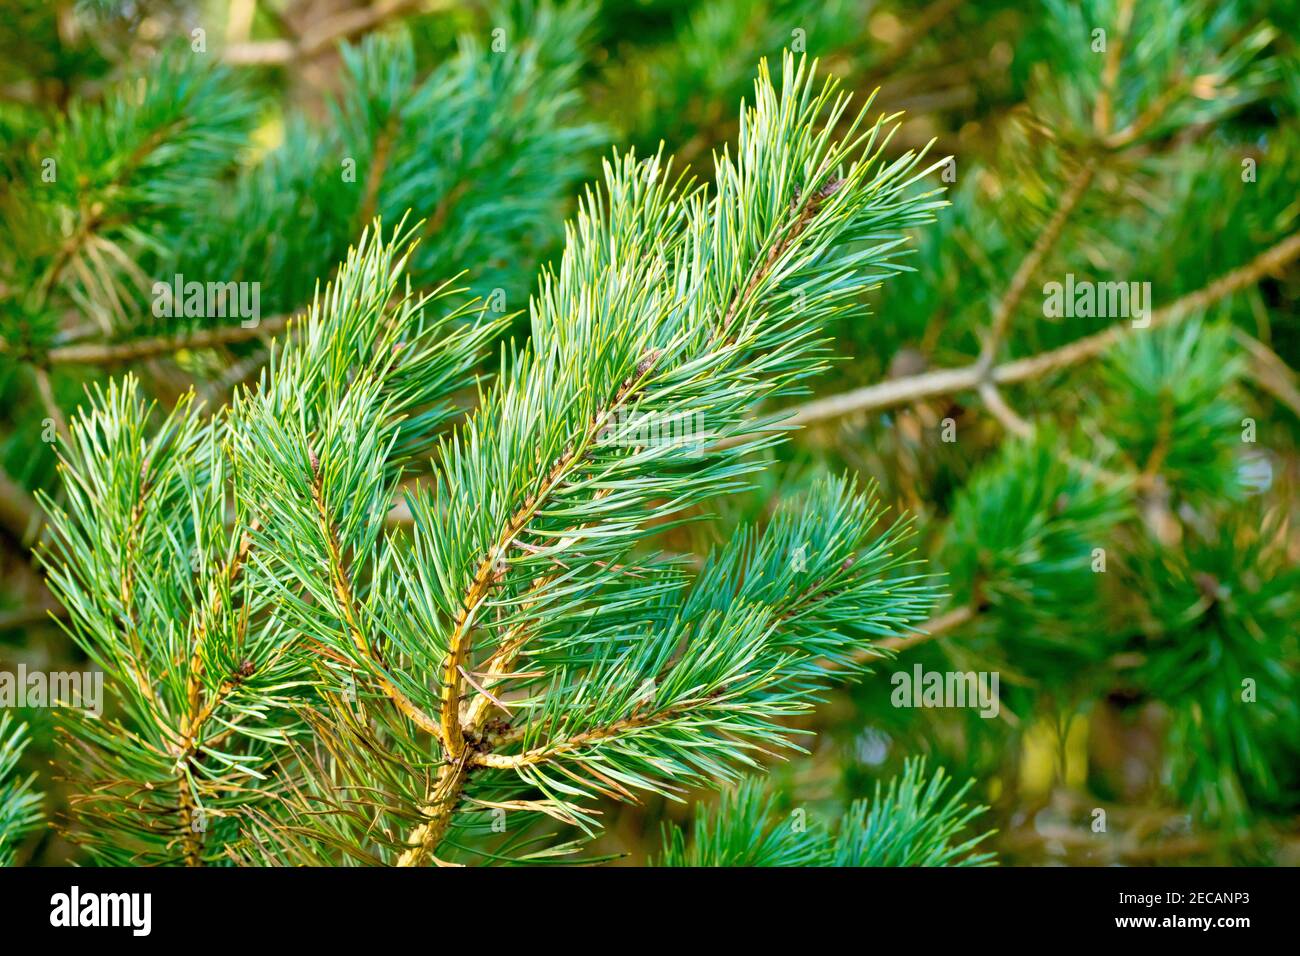 PIN écossais (pinus sylvestris), gros plan d'une branche de l'arbre montrant la couleur jaune doré de l'écorce et les aiguilles vertes. Banque D'Images